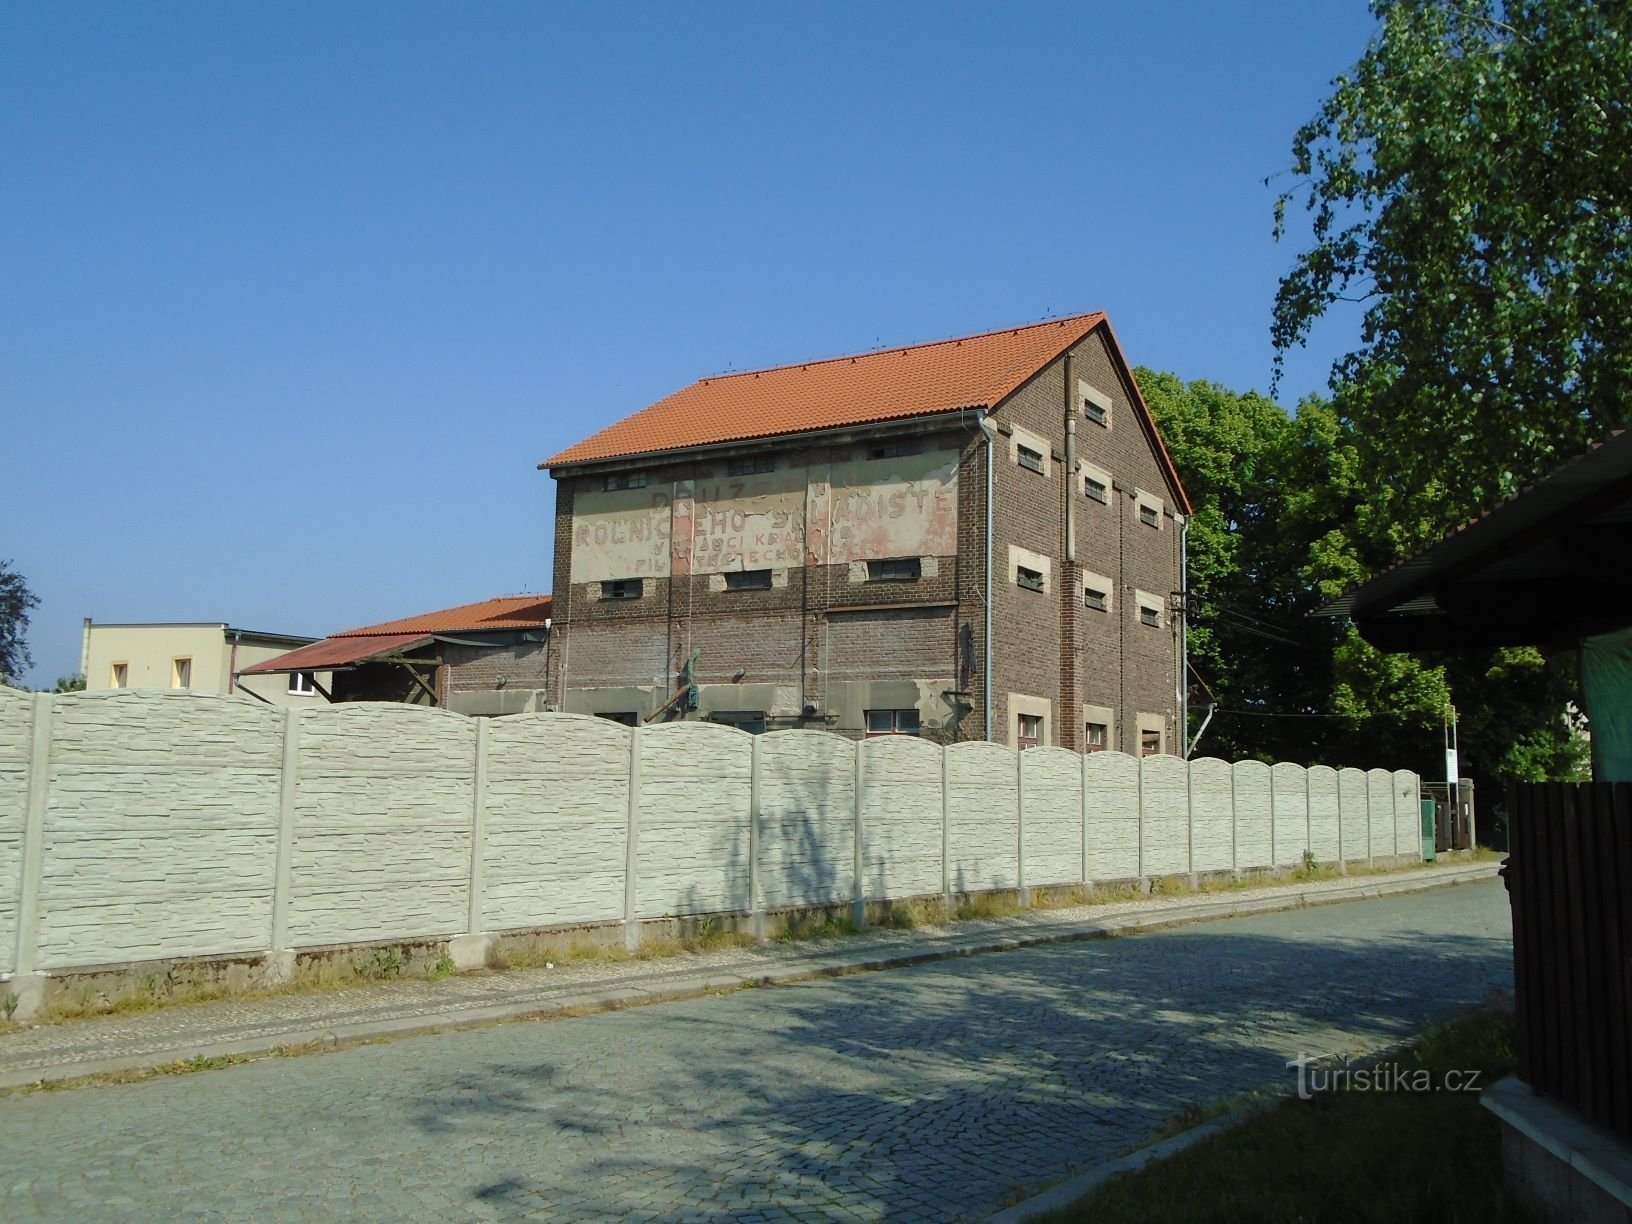 Το κτίριο της πρώην αγροτικής αποθήκης (Třebechovice pod Orebem, 12.5.2018 Μαΐου XNUMX)